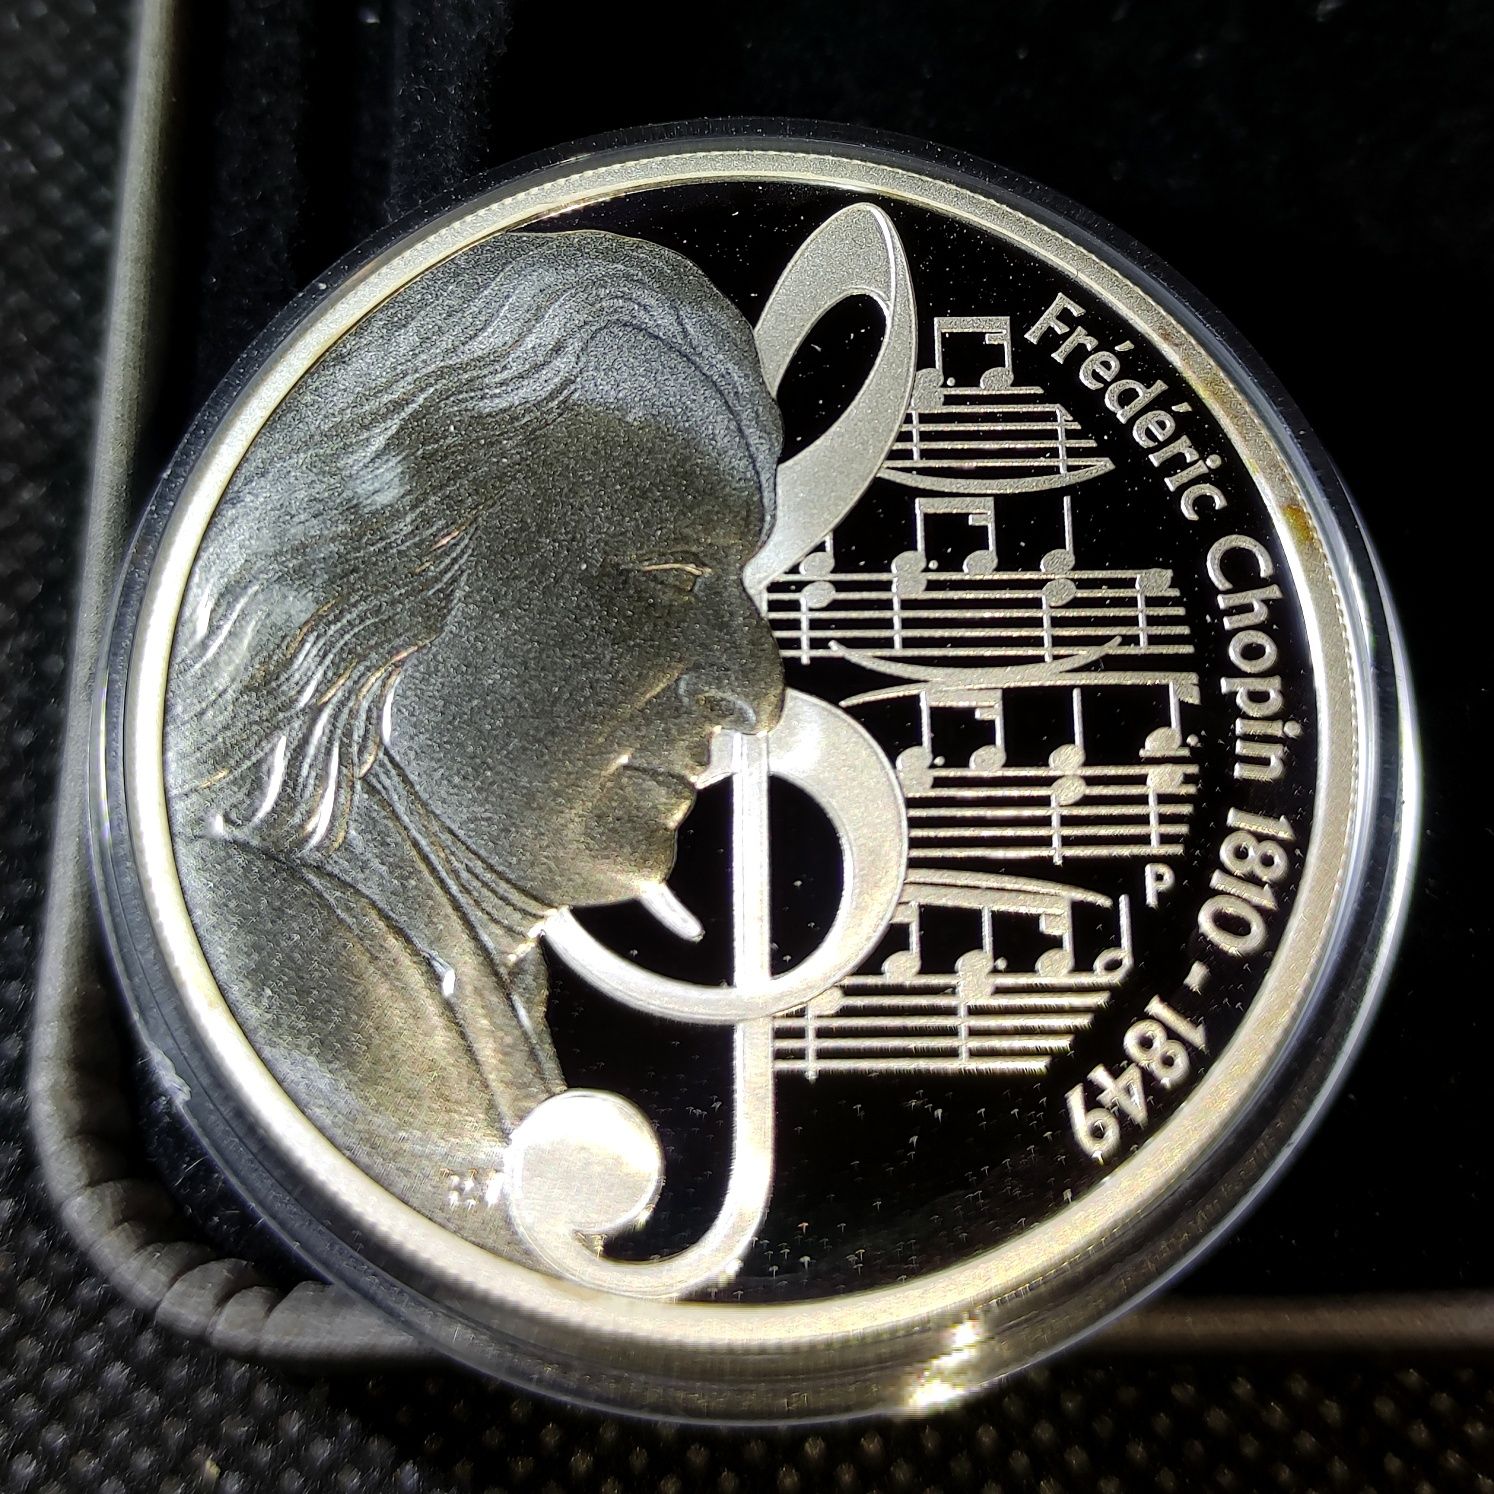 Серебряная монета Фредерик Шопен 1 доллар 2010 Тувалу 31,1 грамм 999